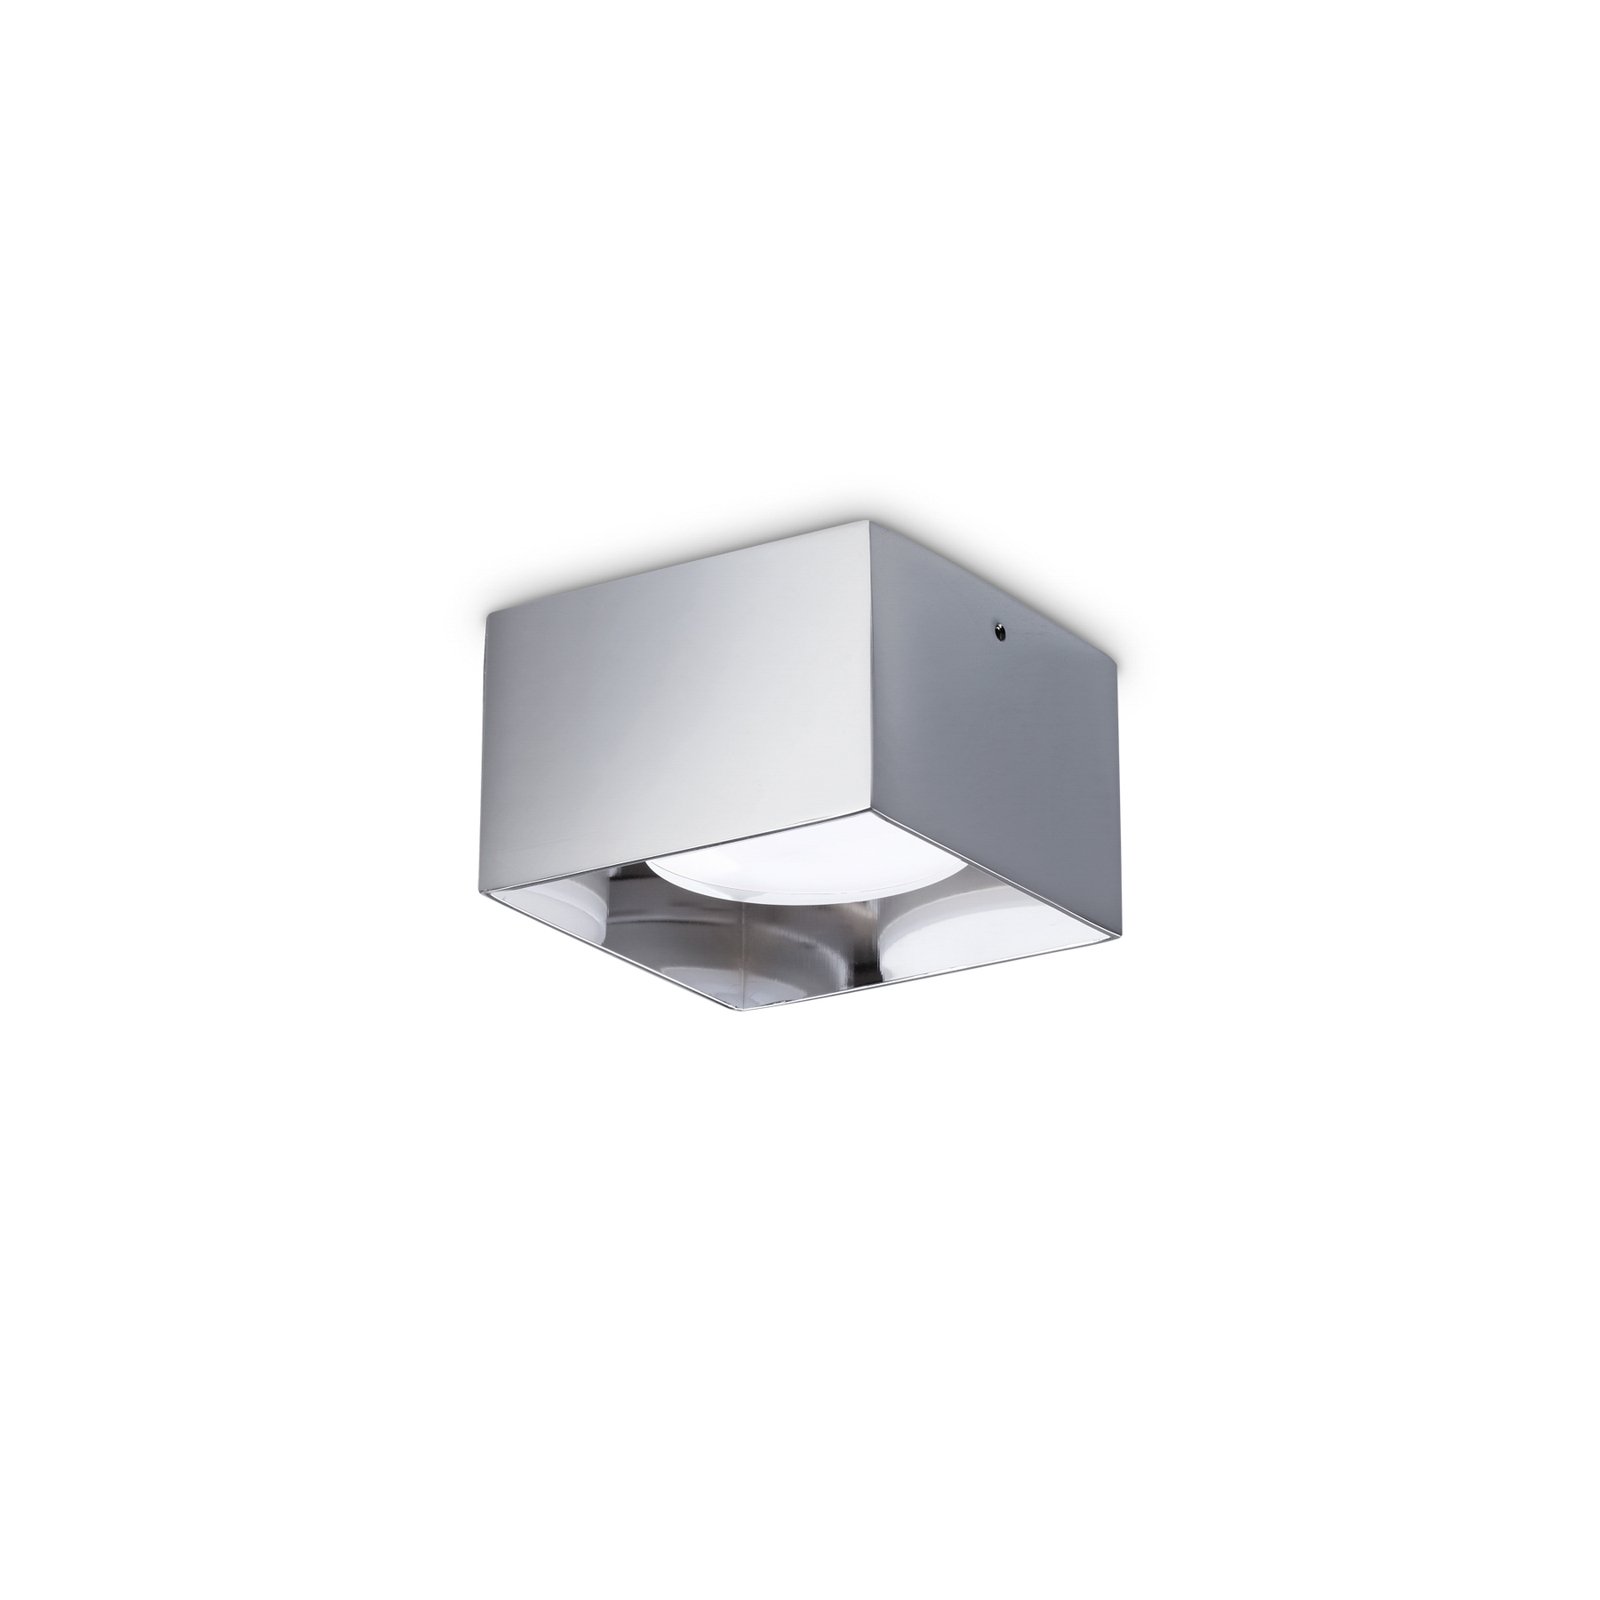 Ideal Lux downlight Spike Square, chroomkleurig, aluminium, 10x10 cm